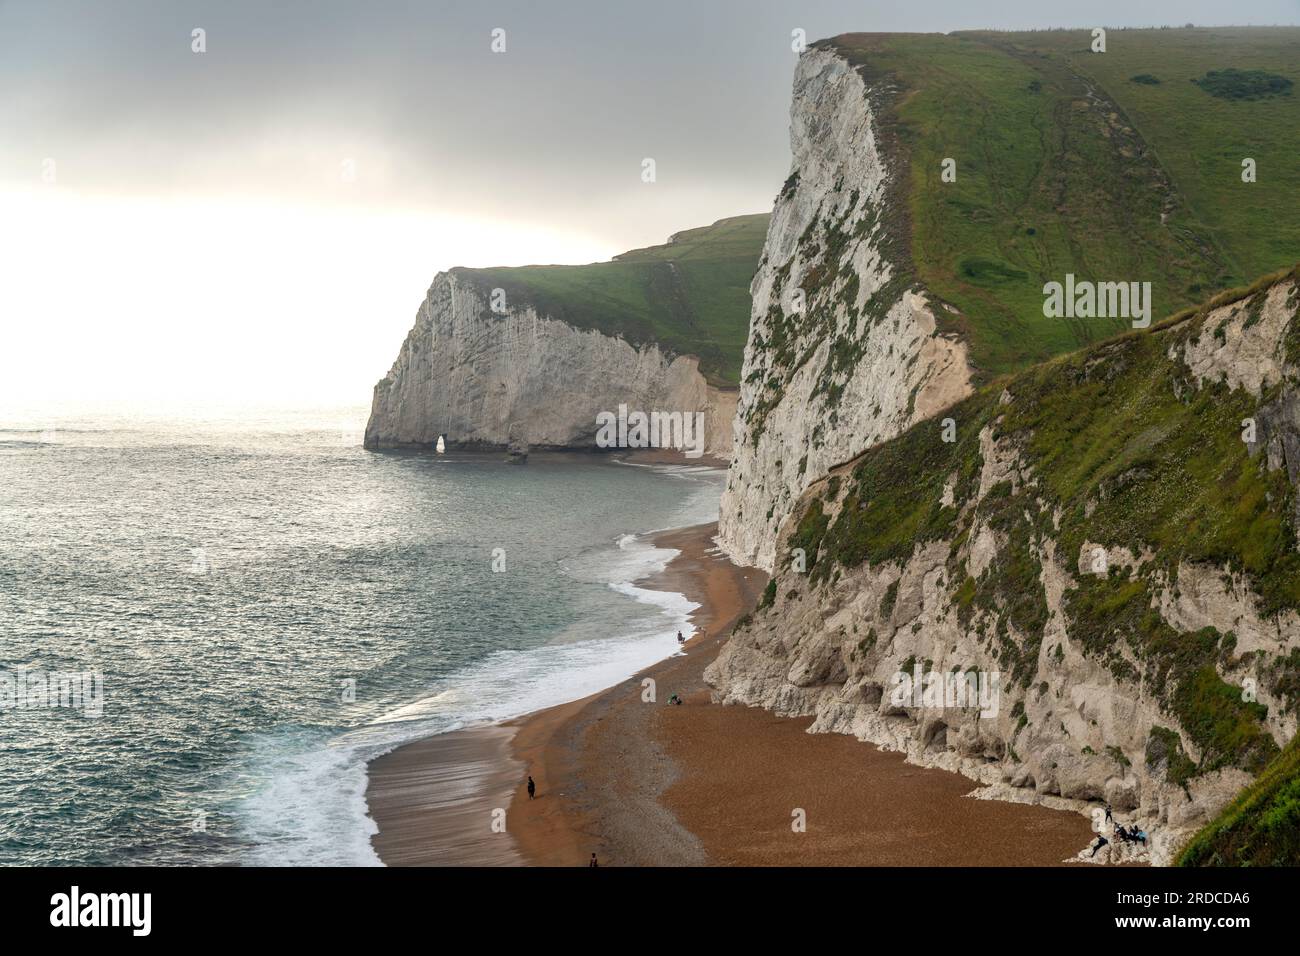 Weisse Klippen und Strand des UNESCO Weltnaturerbe Jurassic Coast, England, Großbritannien, Europa  | White cliffs and beach of the UNESCO world herit Stock Photo